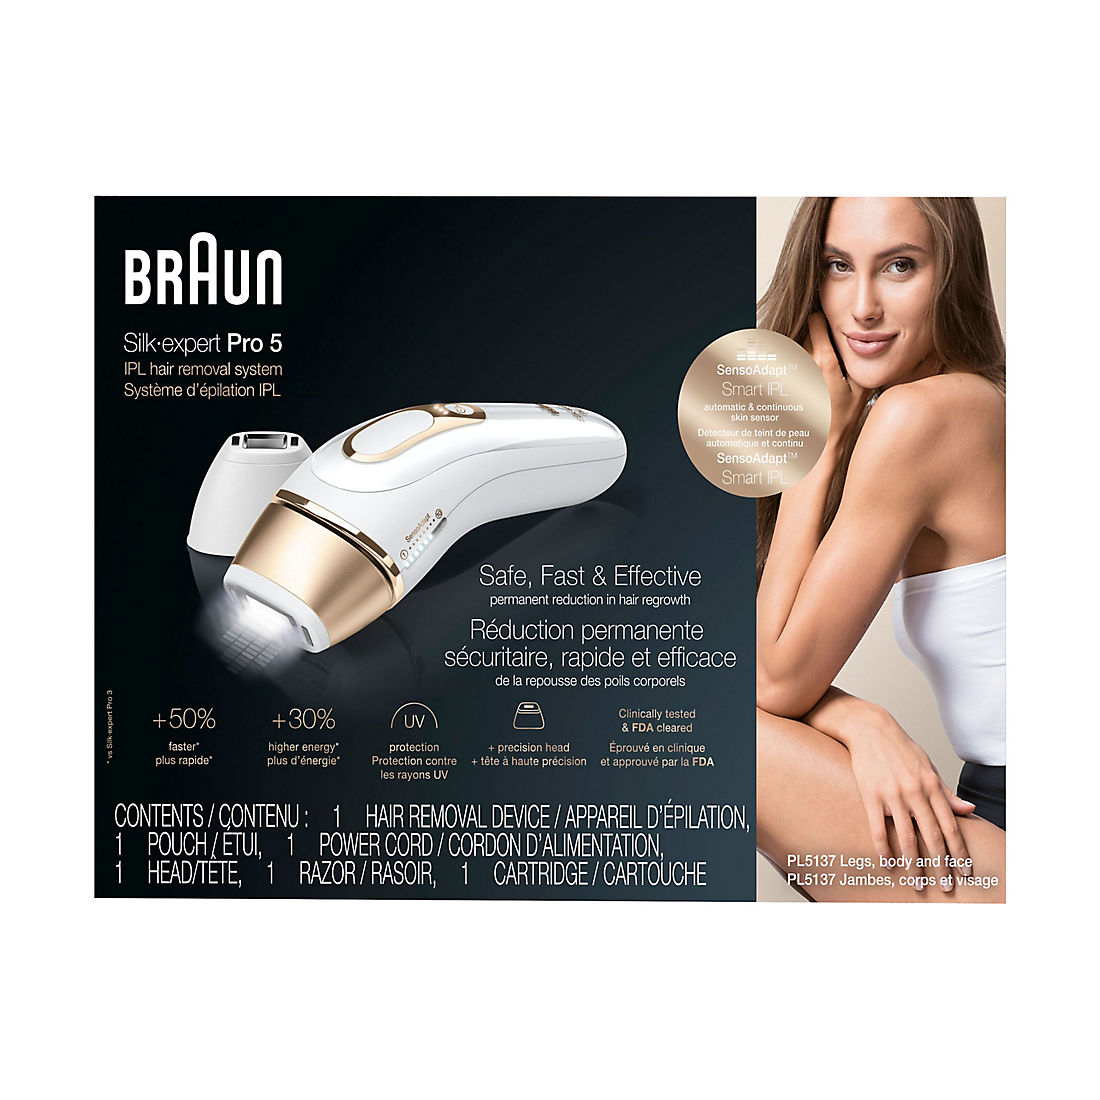 美容/健康 美容機器 Braun Silk expert Pro 5 IPL Hair Removal System, PL5137 with Venus Swirl  Razor, FDA Cleared - White and Gold